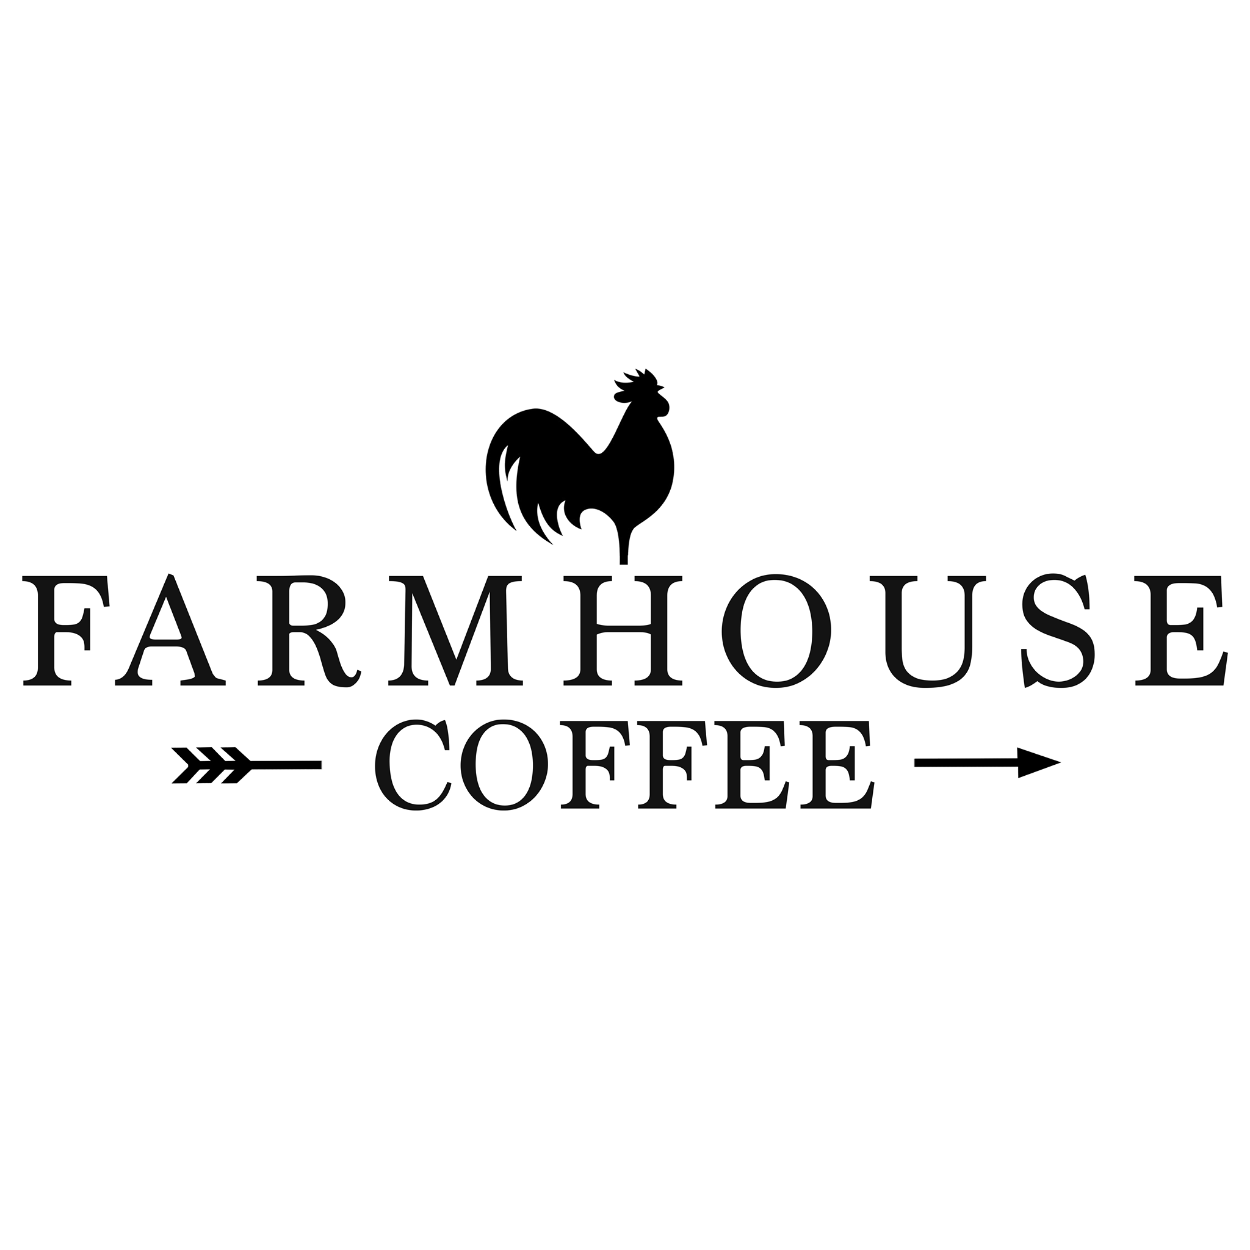 Farmhouse Coffee, LLC